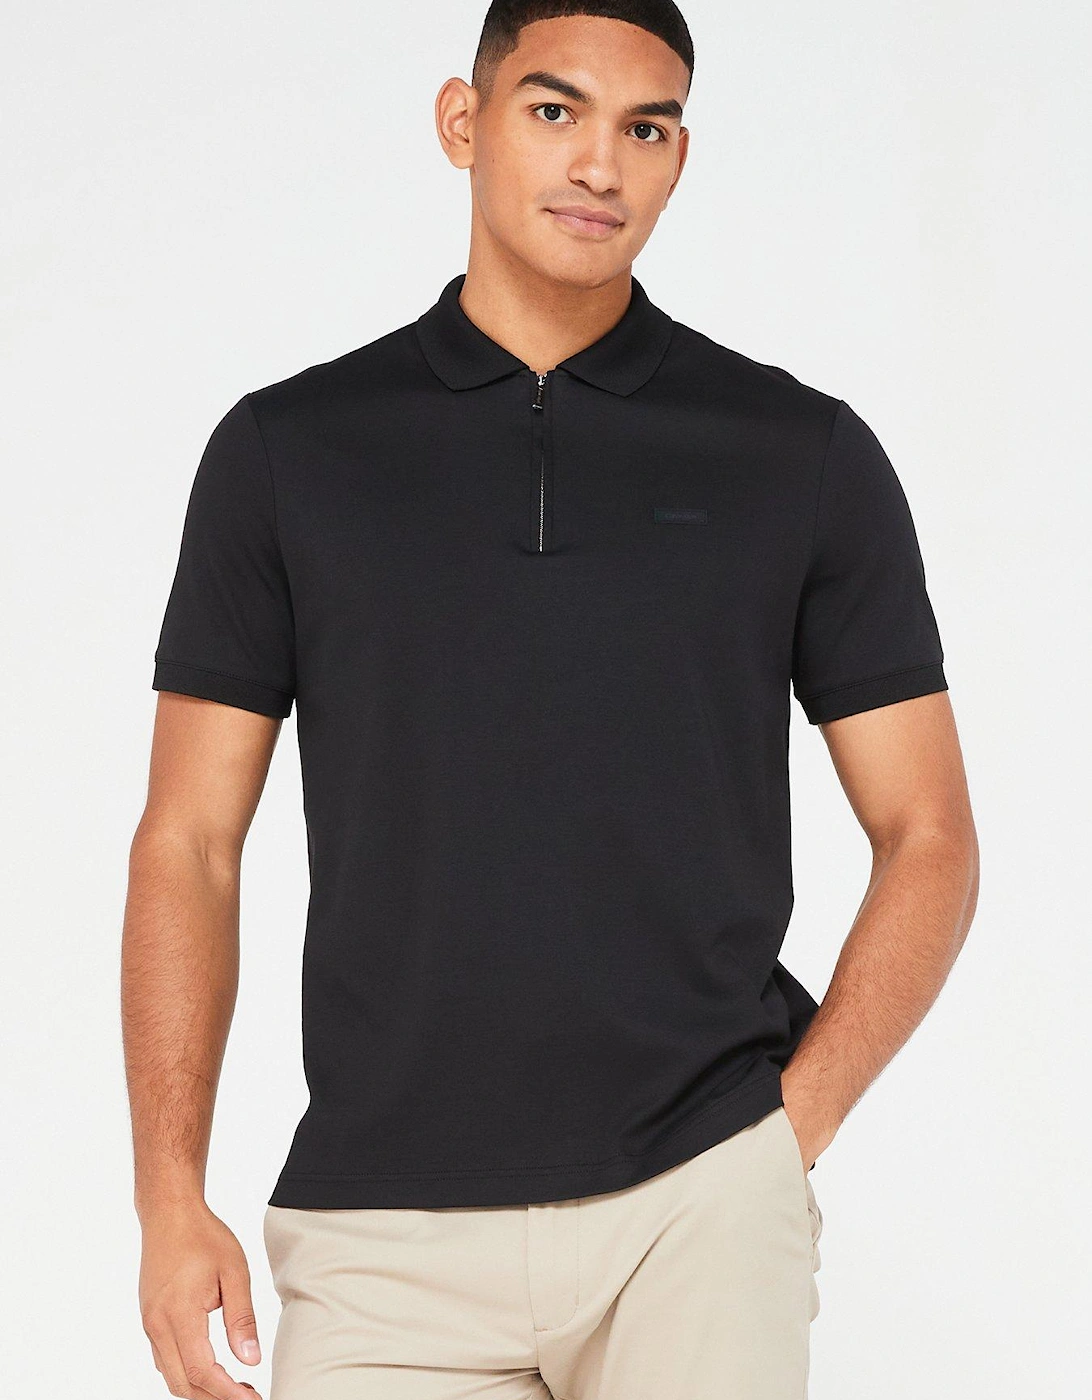 Smooth Cotton Zip Neck Polo Shirt - Black, 5 of 4